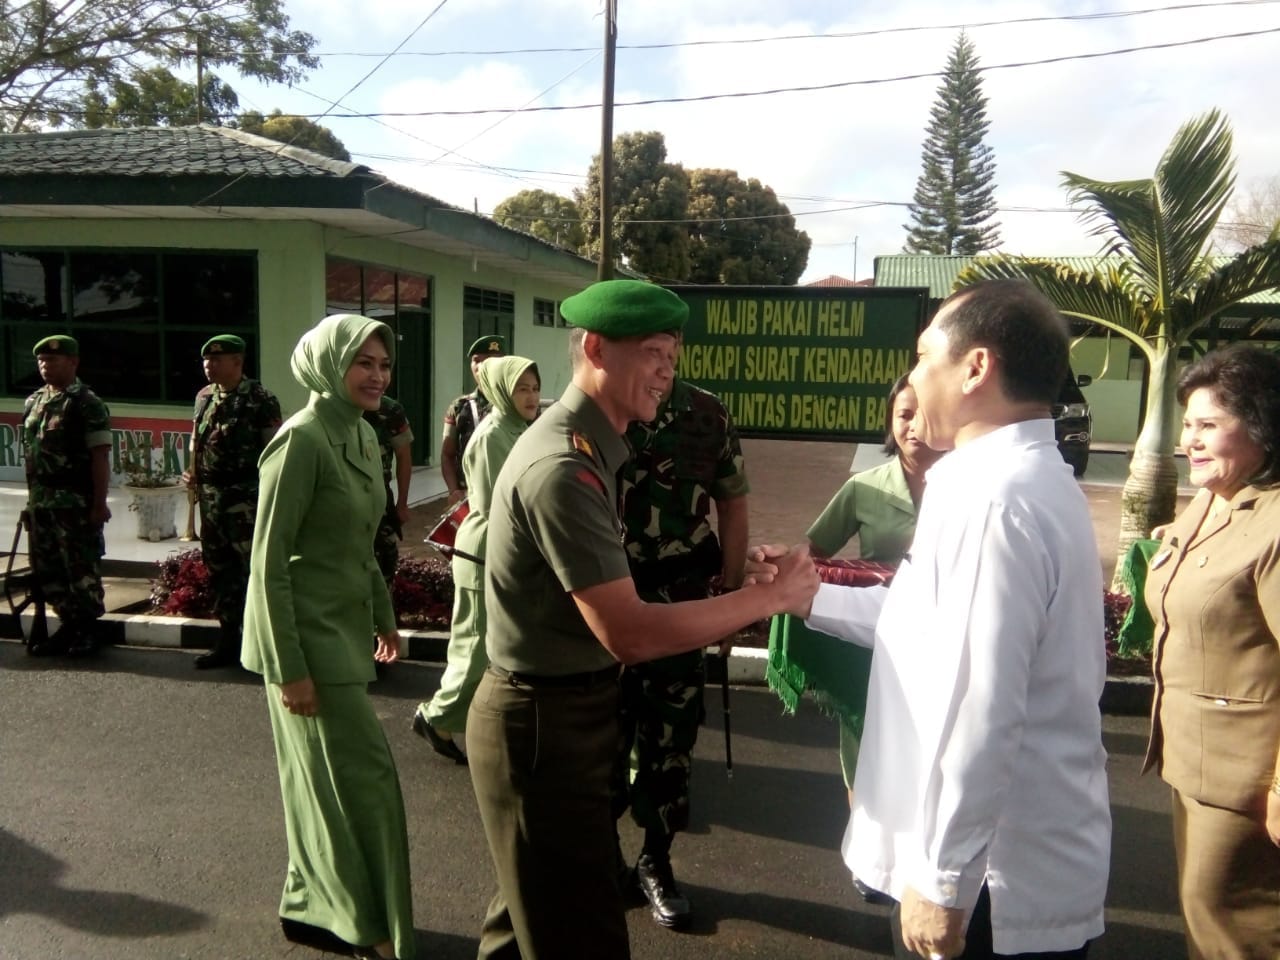 Ket foto : Bupati bersama Wakil Bupati Karo bersalam komando bersama Danrem 023 /KS dalam menyambut kehadiran nya di Makodim 0205 Tanah Karo, Rabu (19/09) 2018